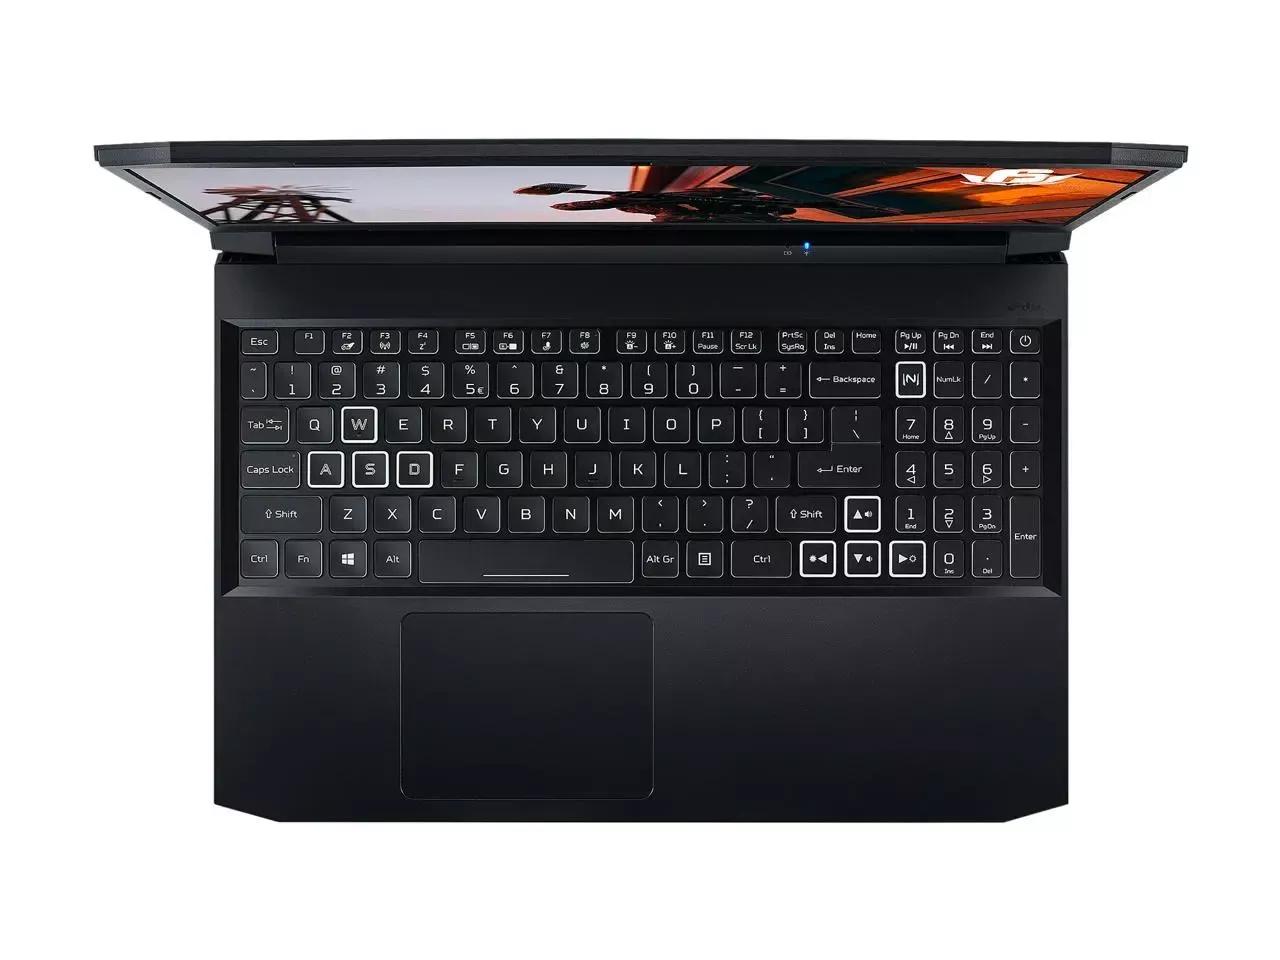 Acer Nitro 5 2020 i5 10TH GEN | RTX 2060 | 8GB RAM | 256GB SSD | 1TB HDD | 15.6" FHD | RGB Keyboard | 1 Year Warranty